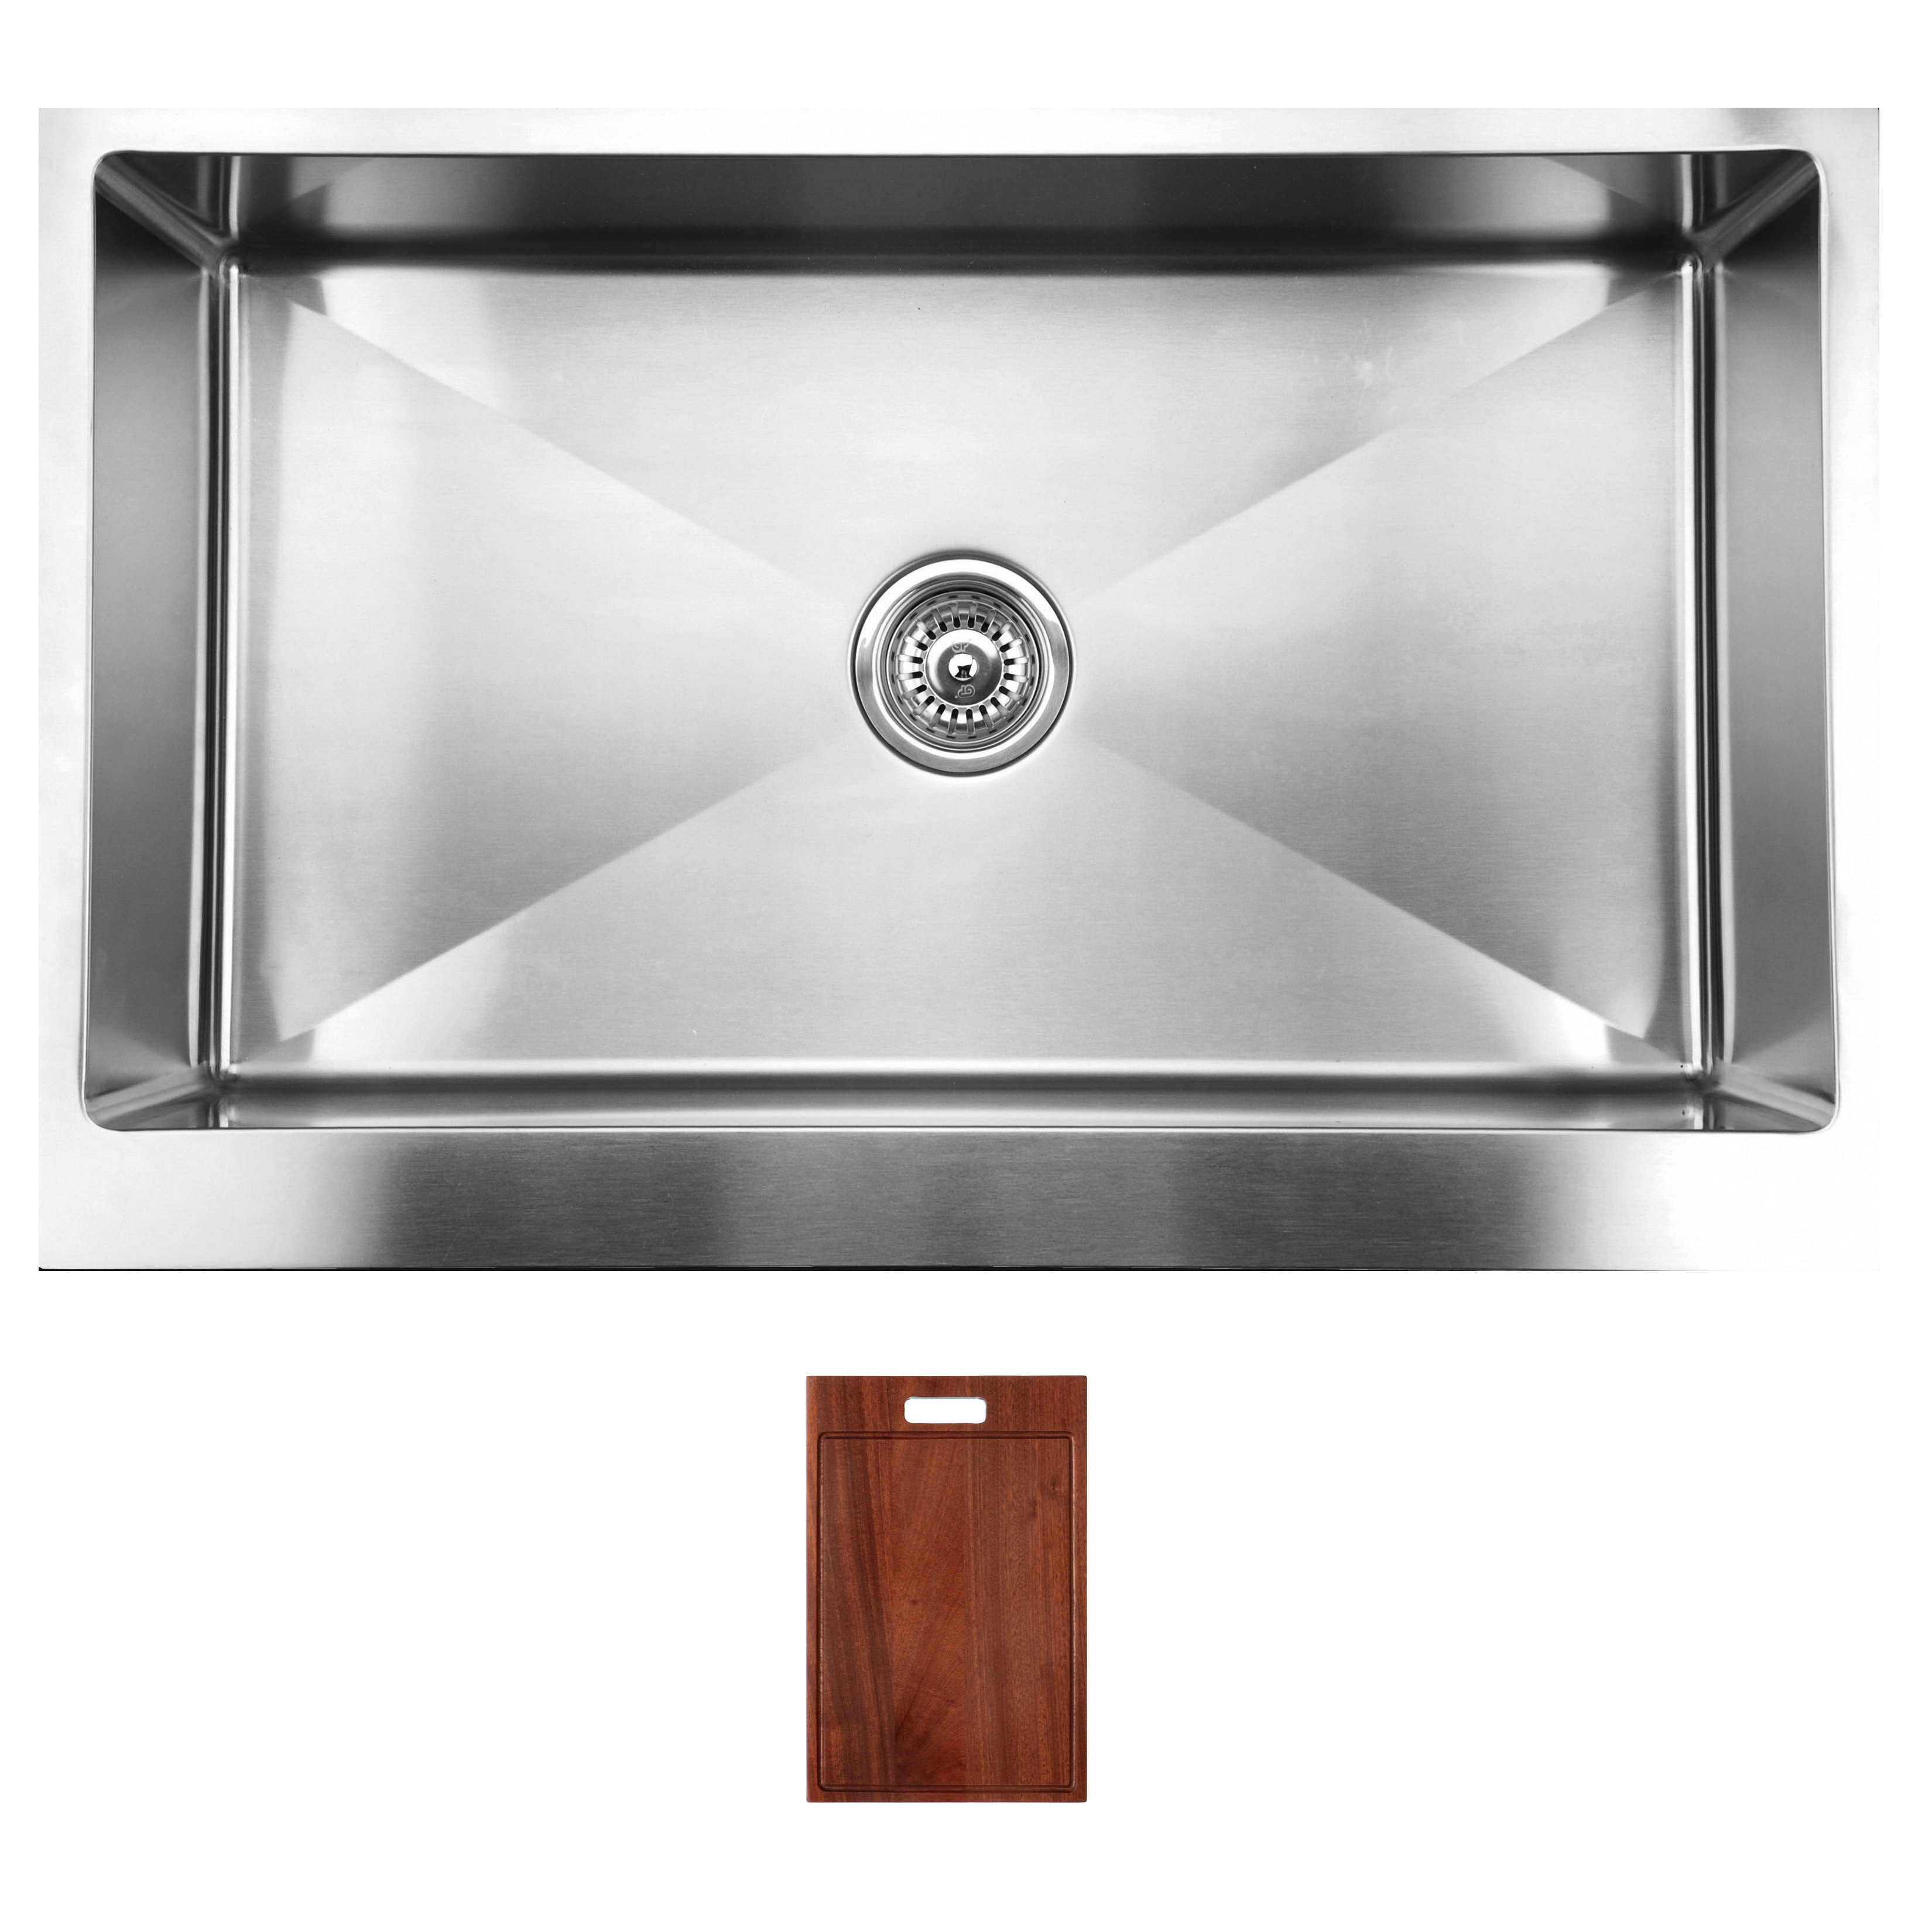 Ukinox Rsfs840 Apron Front Single Basin Stainless Steel Undermount Kitchen Sink